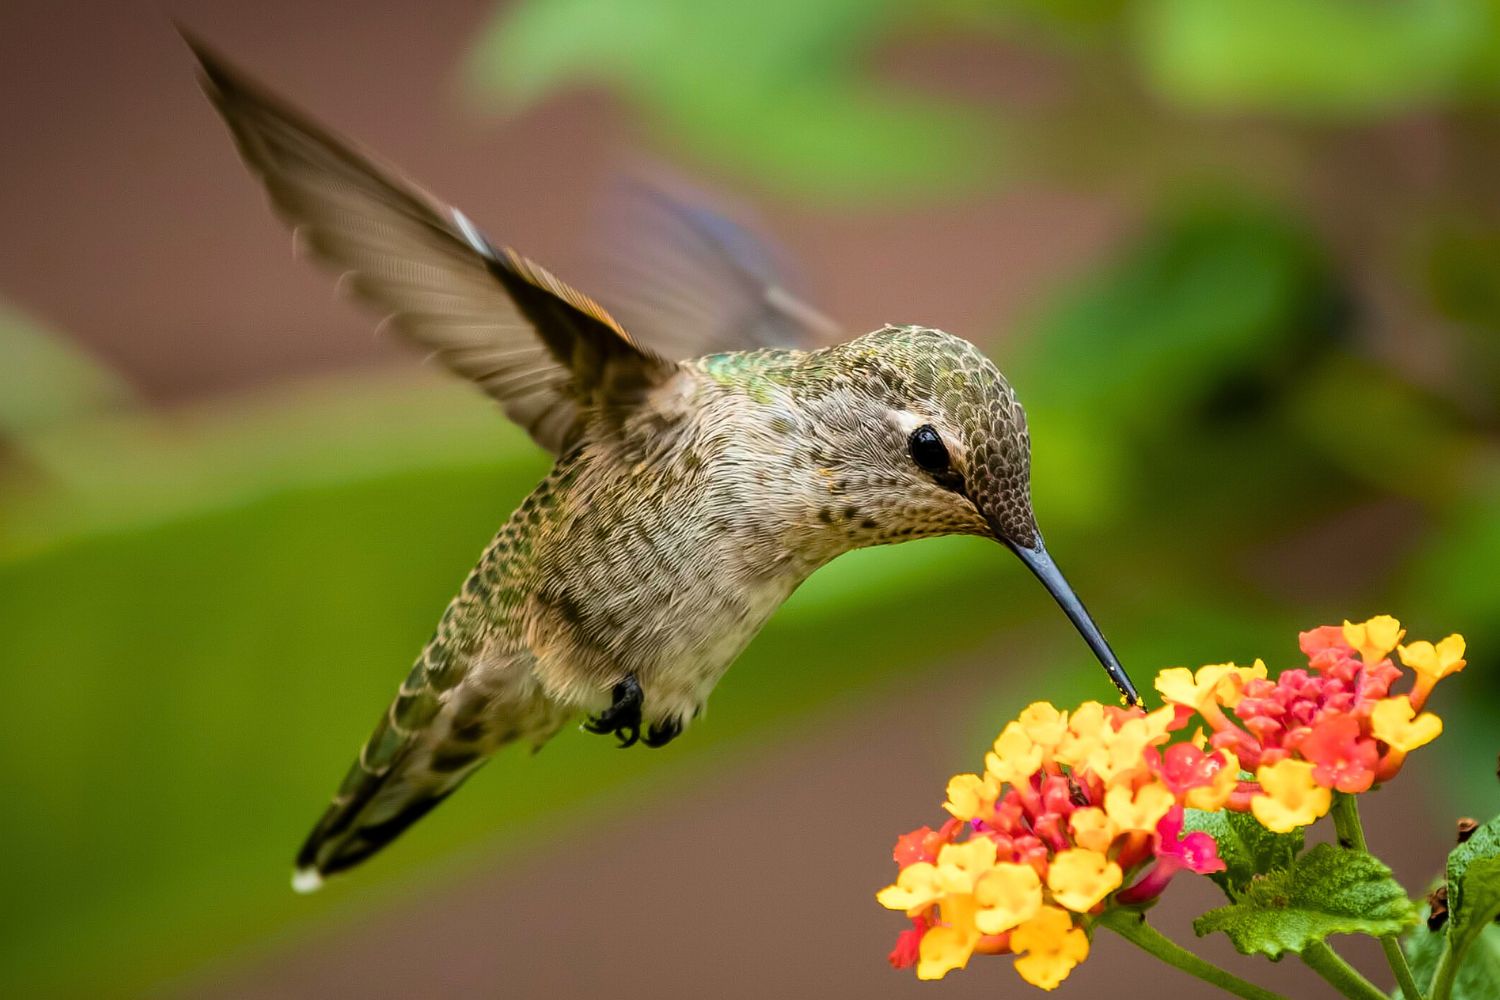 2. Der Flug der Kolibris